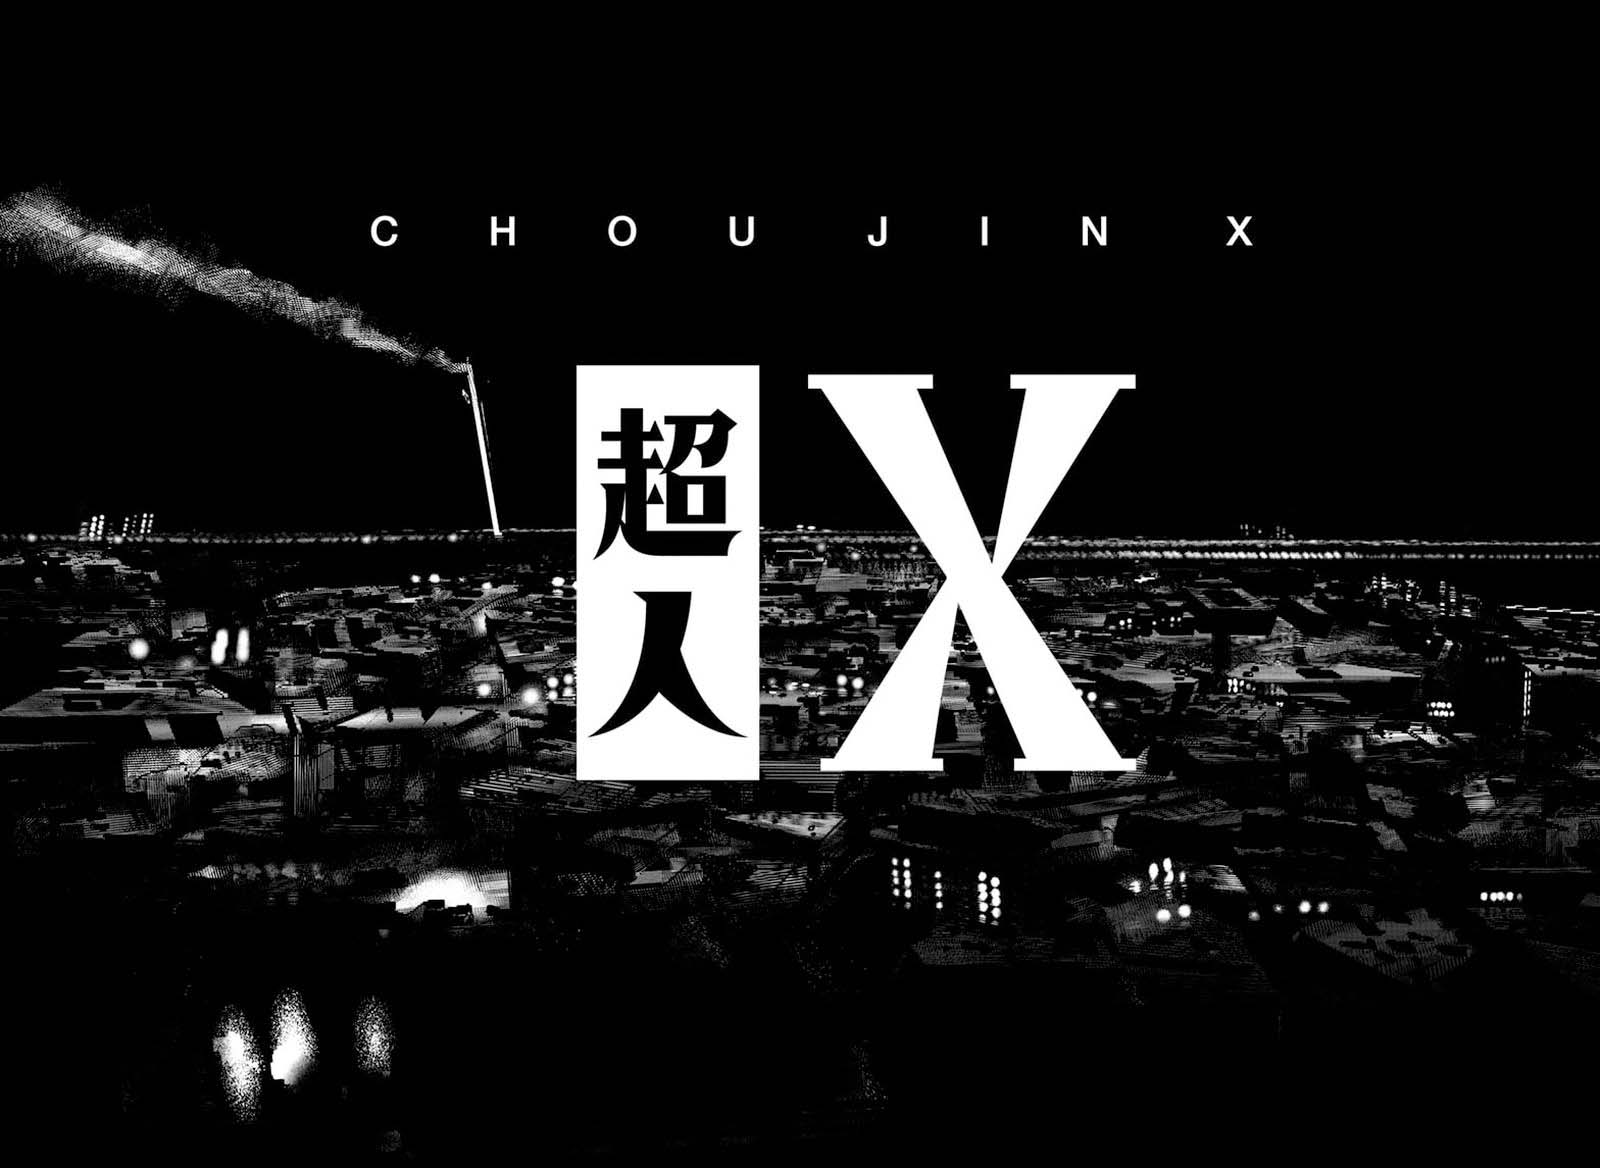 Choujin X 1 67